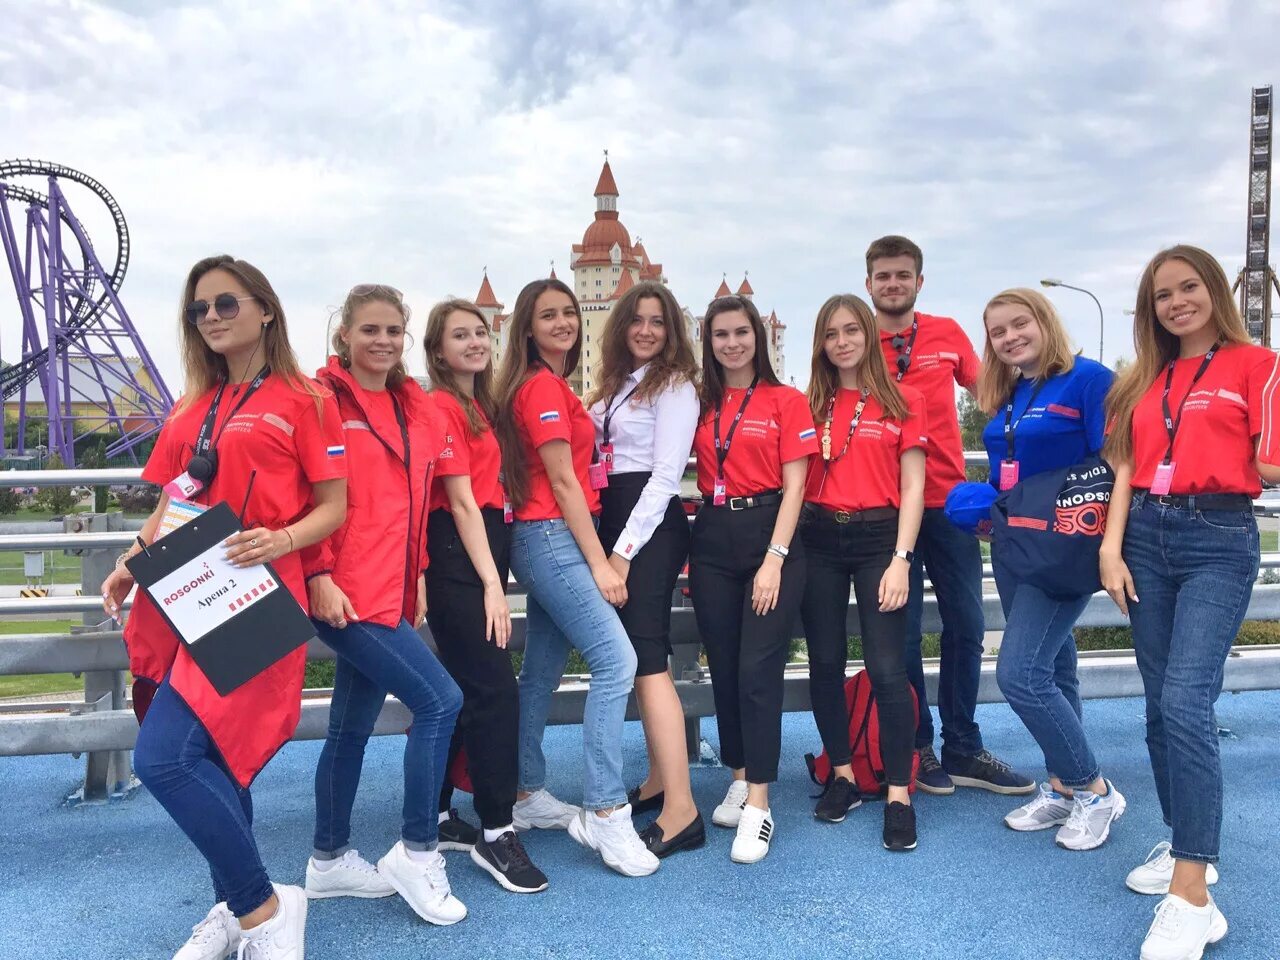 Формула 1 Азербайджан 2022 волонтеры. Формула 1 Сочи волонтеры. Волонтеры на формуле 1 в Азербайджане. Формула 1 волонтеры. Первая волонтерская организация